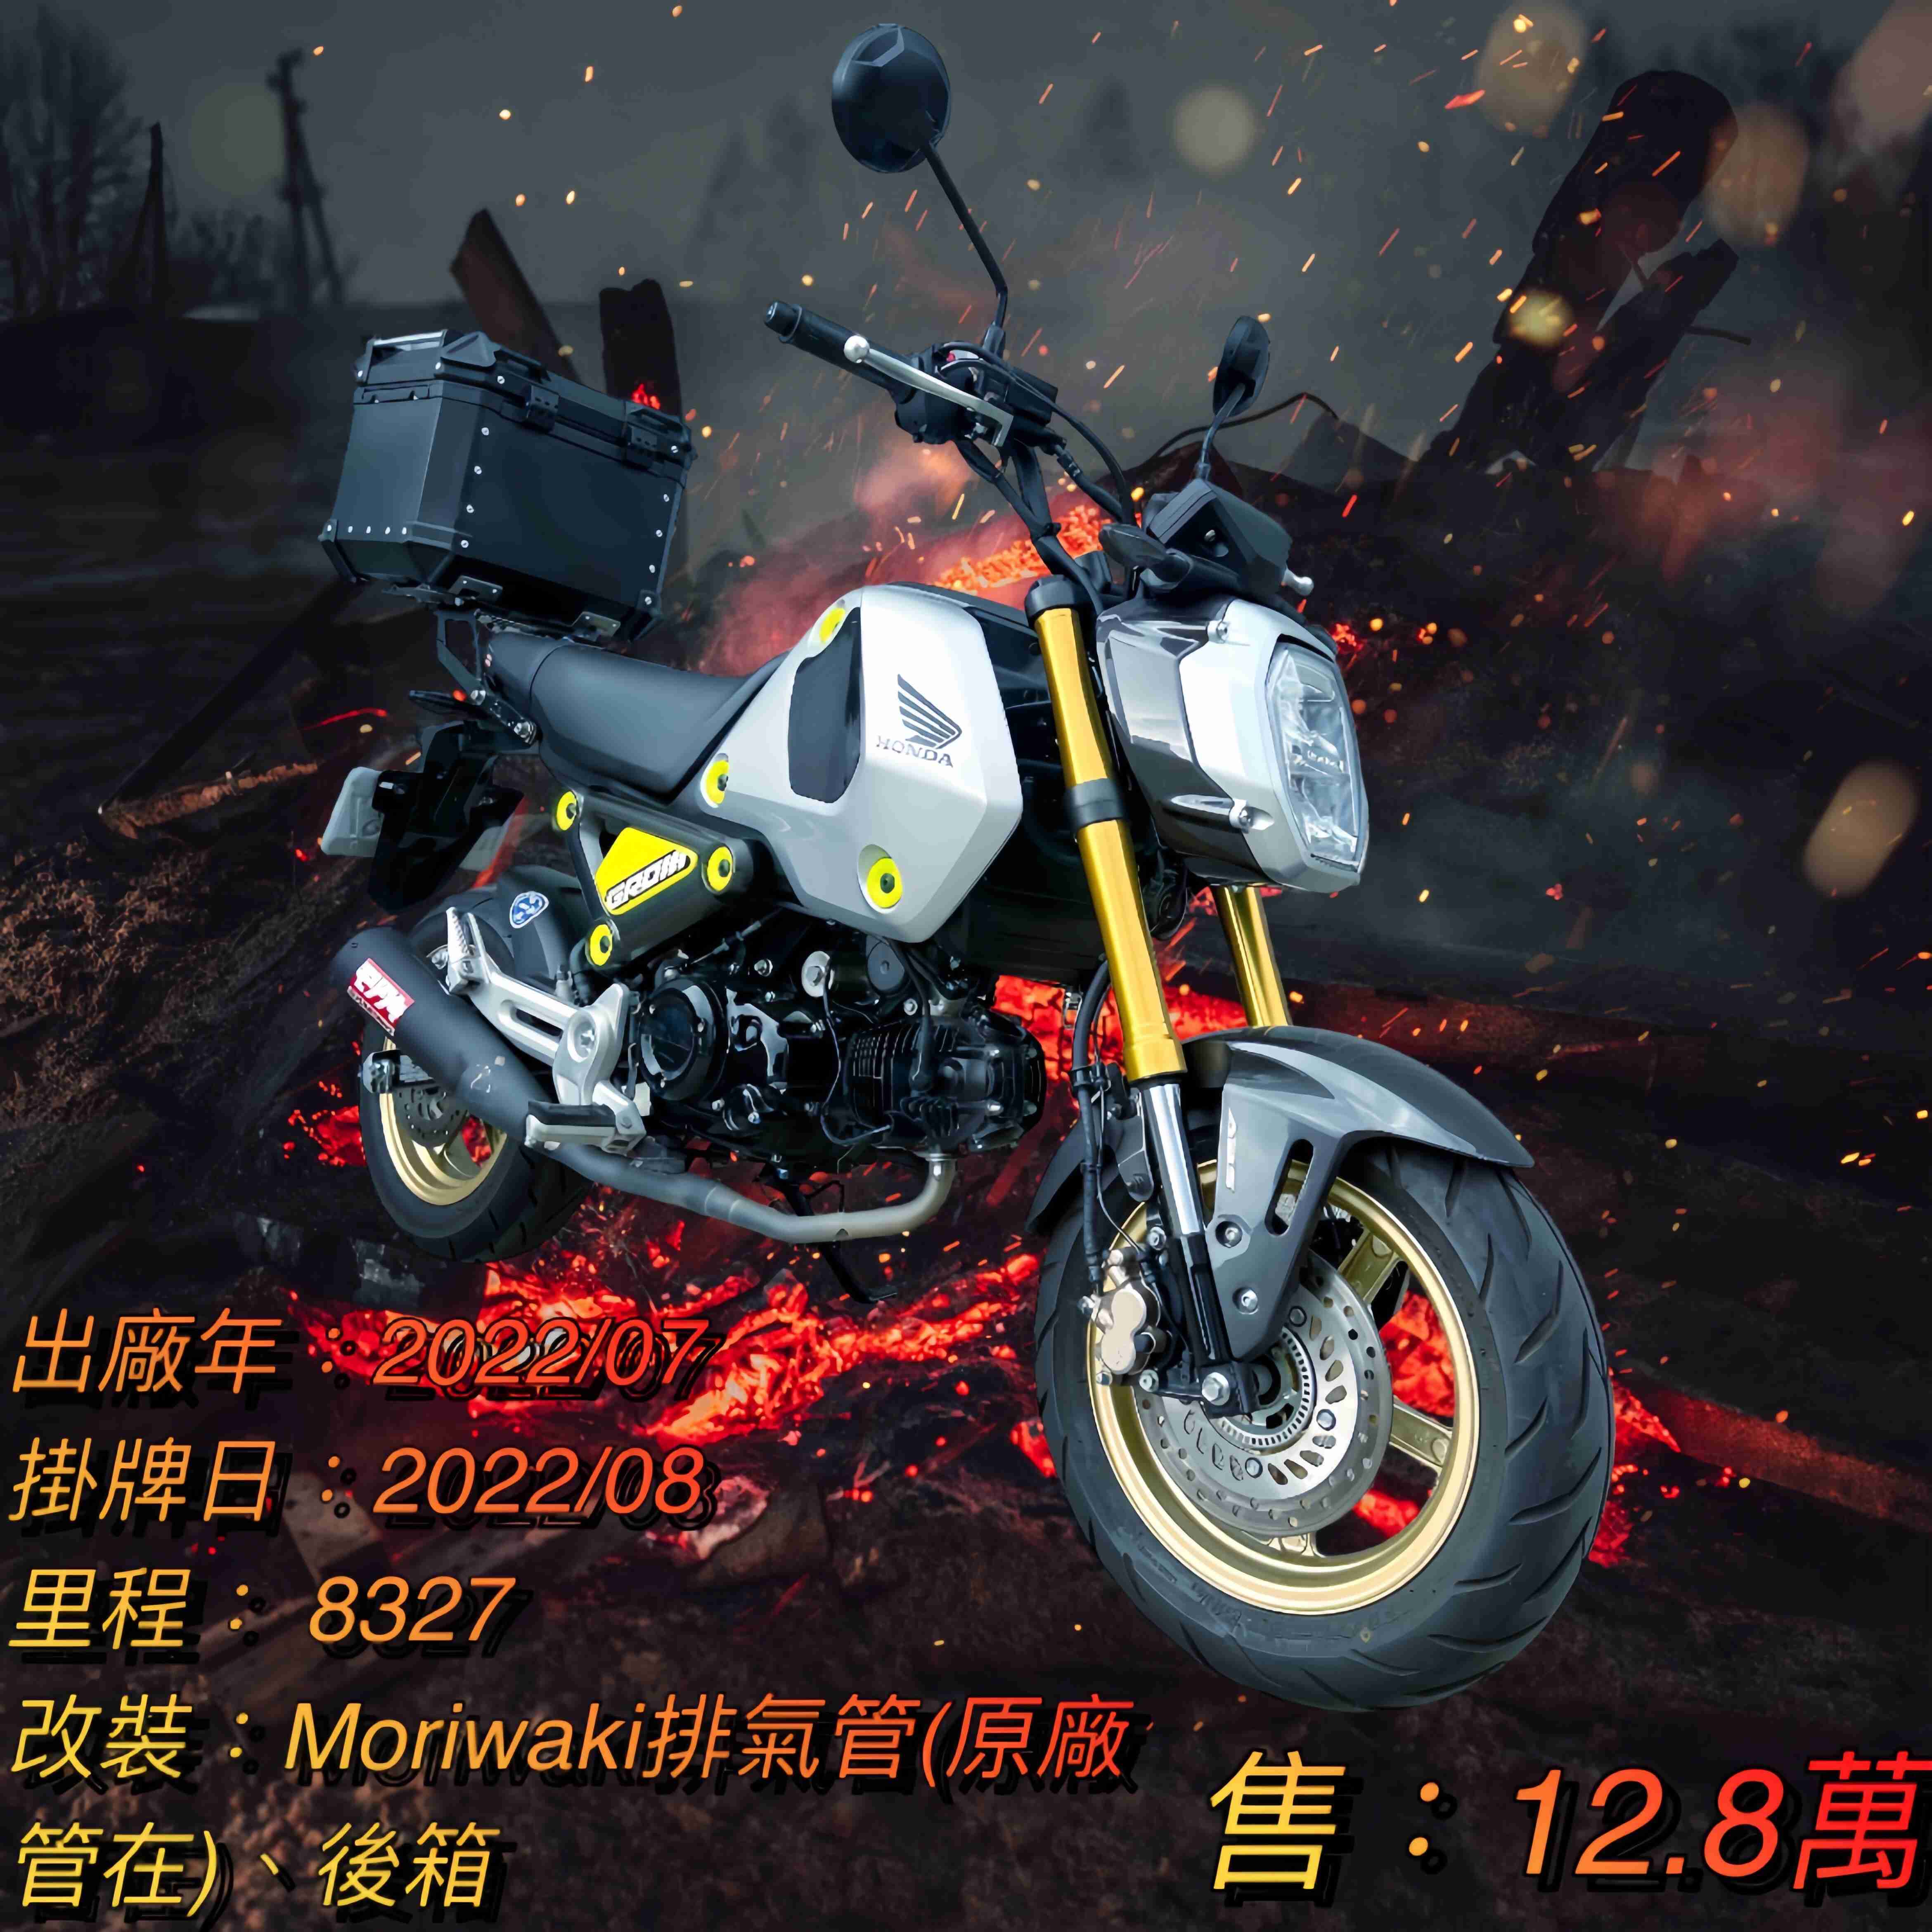 【阿宏大型重機買賣】HONDA MSX125(GROM) - 「Webike-摩托車市」 2022年 MSX125 GROM 台本車 一手 原漆 無事故 阿宏大型重機買賣